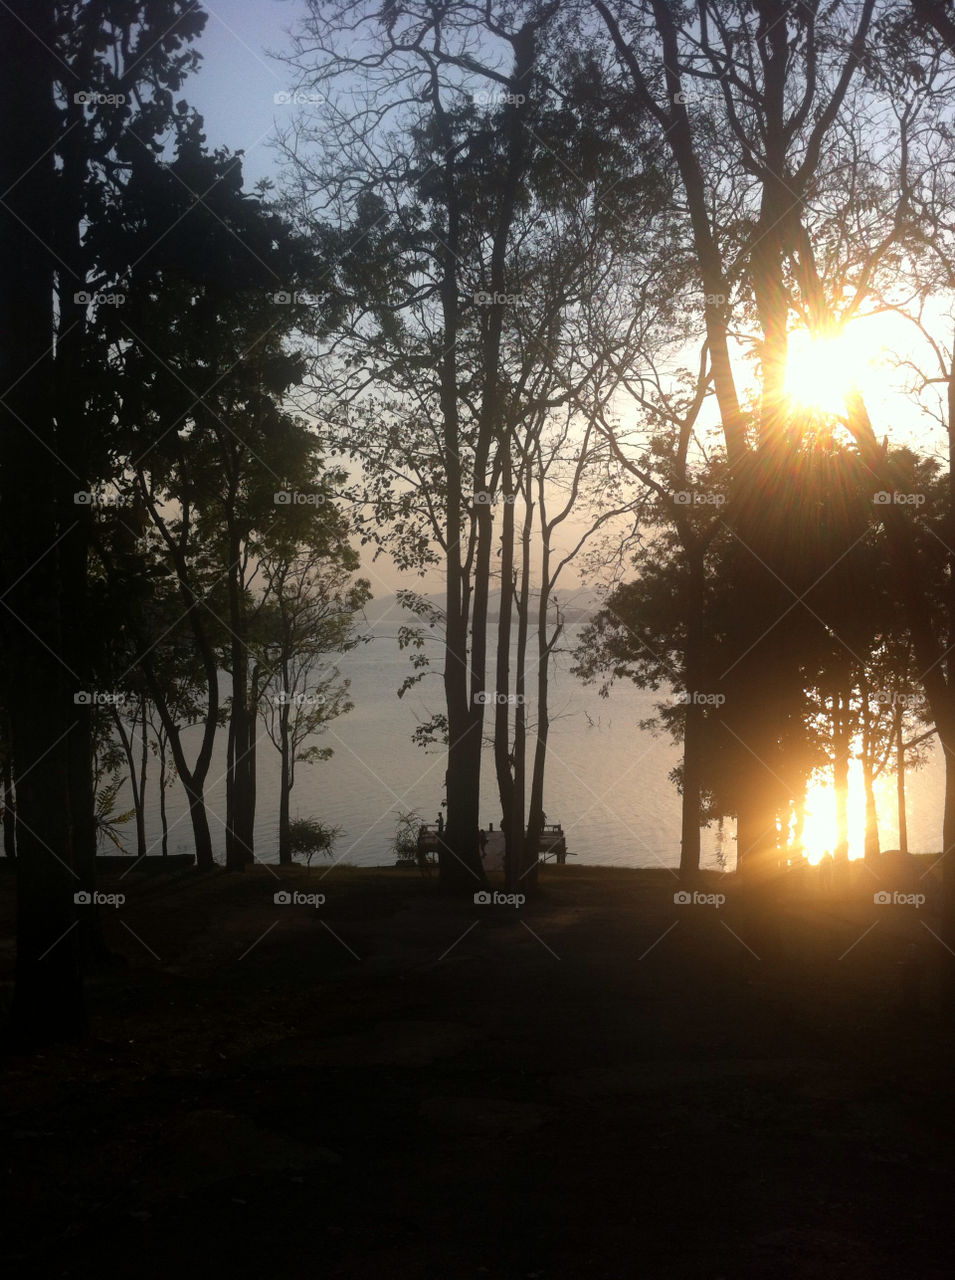 Sunset at a reservoir in Kanchanaburi, Thailand.